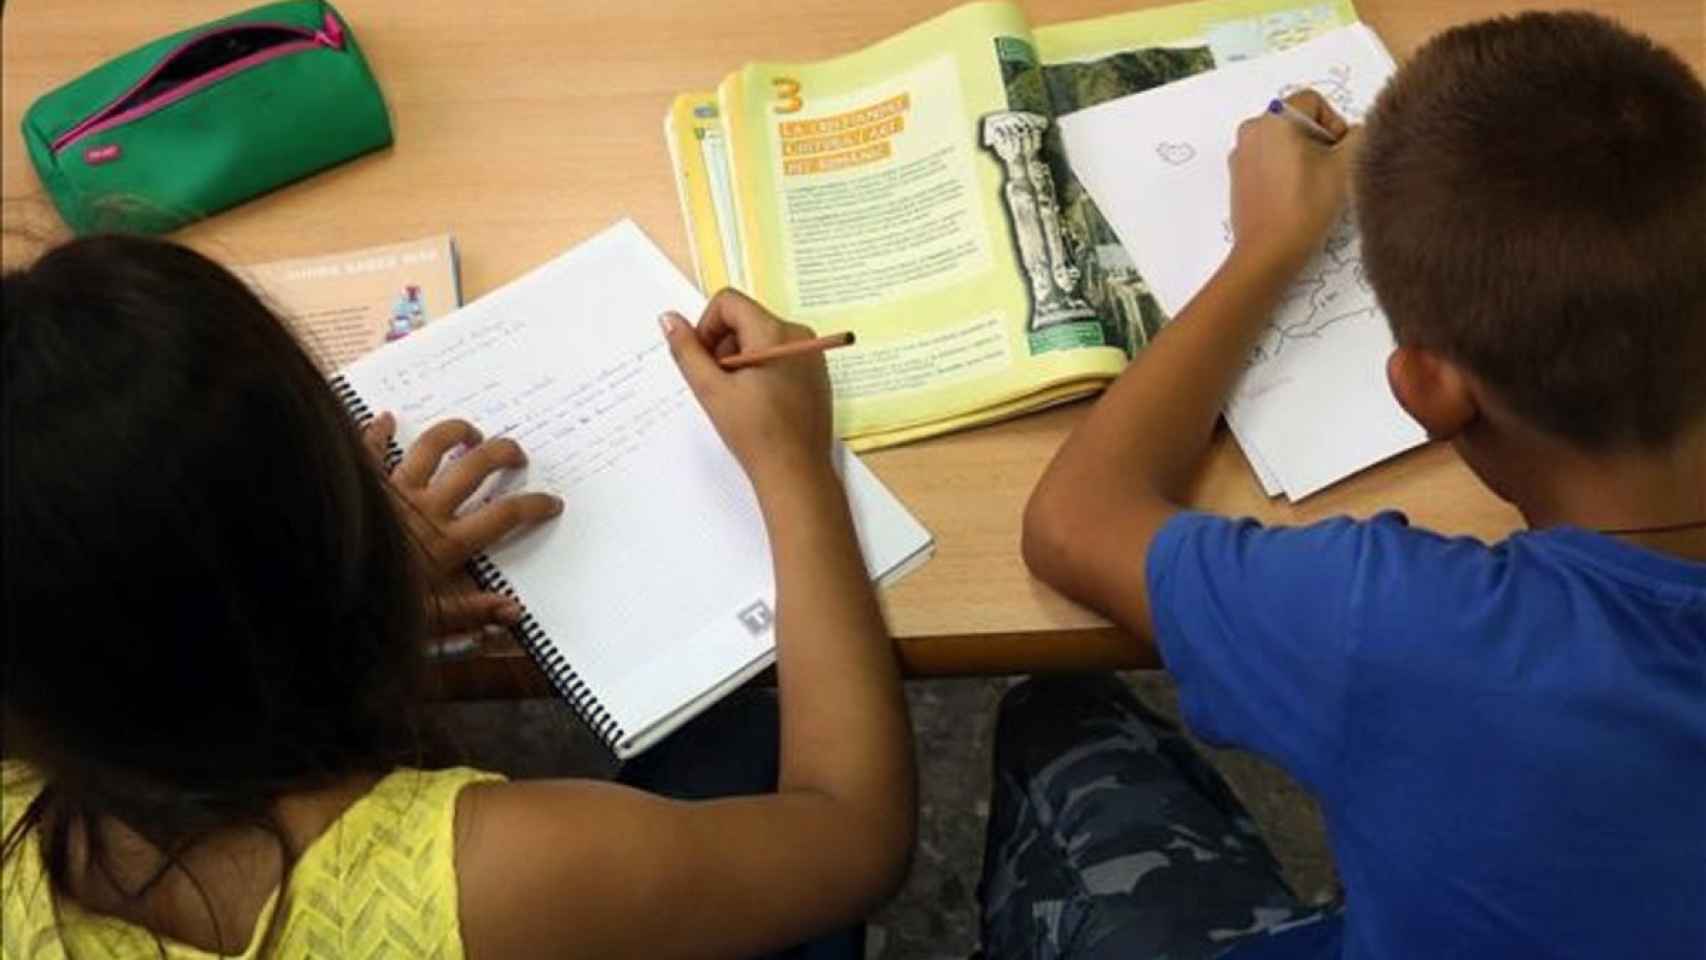 La CEAPA lanza una nueva campaña contra los deberes escolares